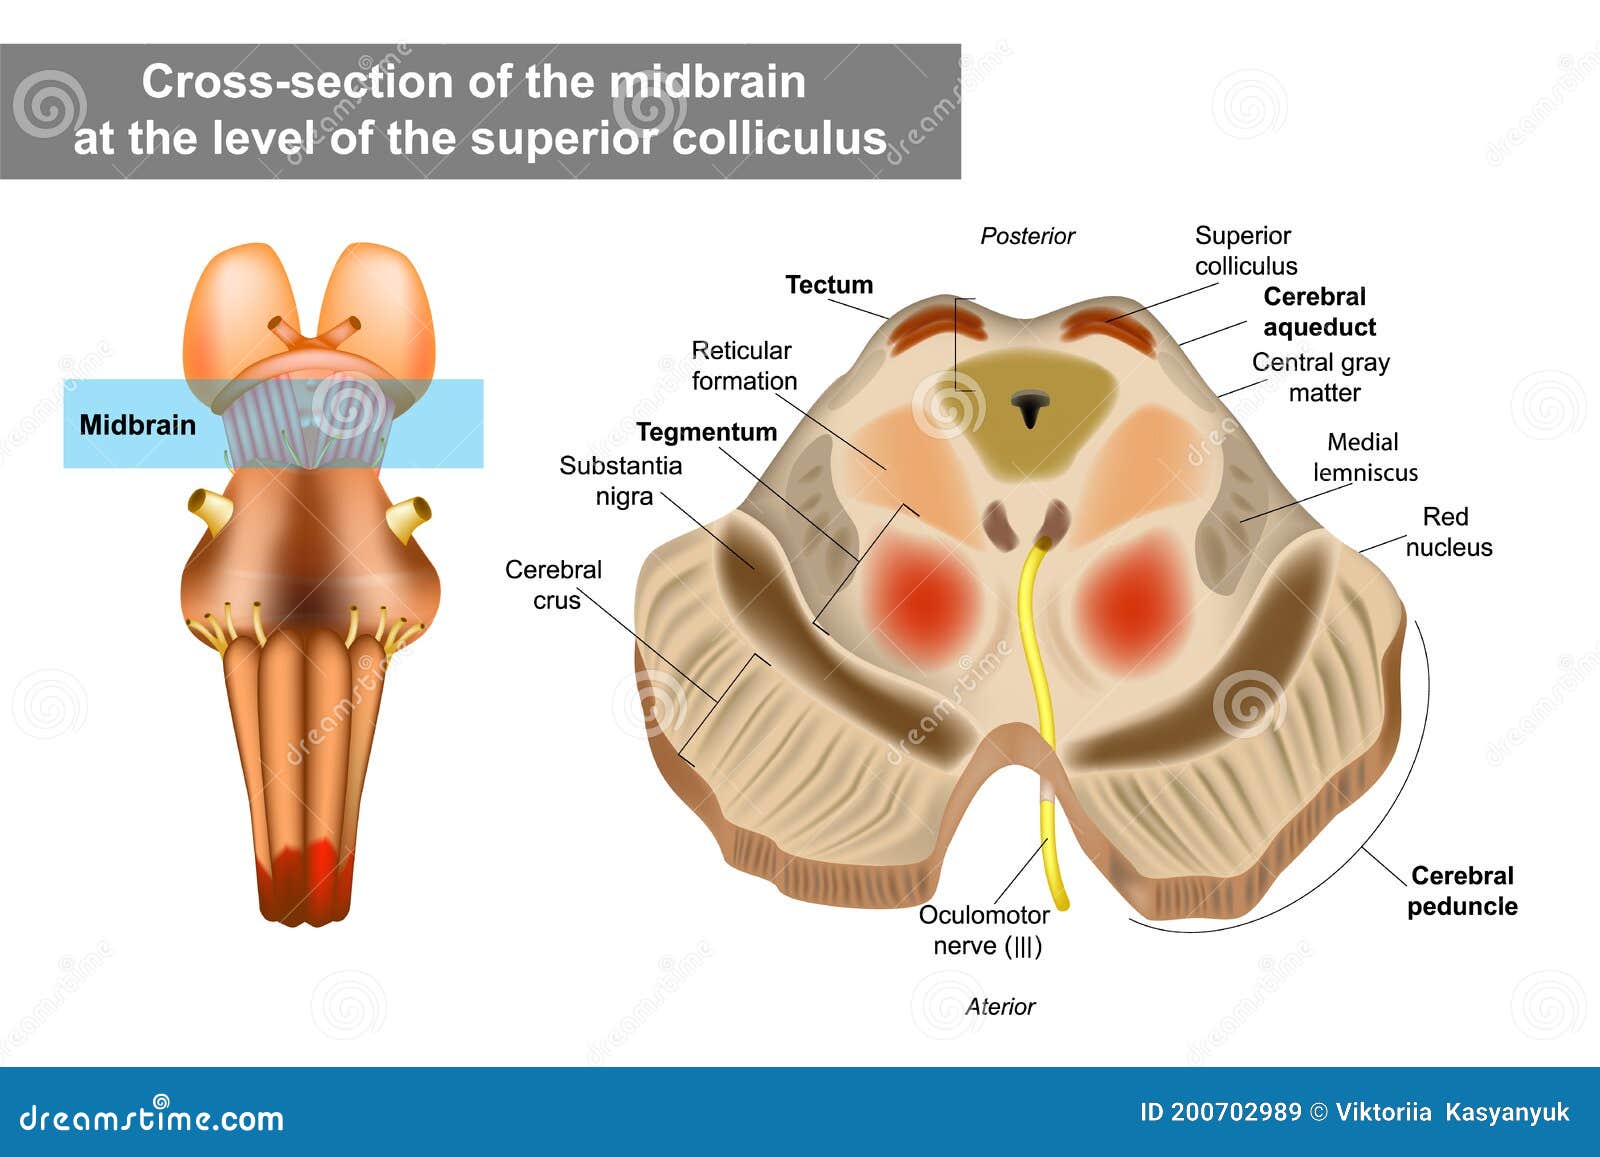 midbrain or mesencephalon anatomy .